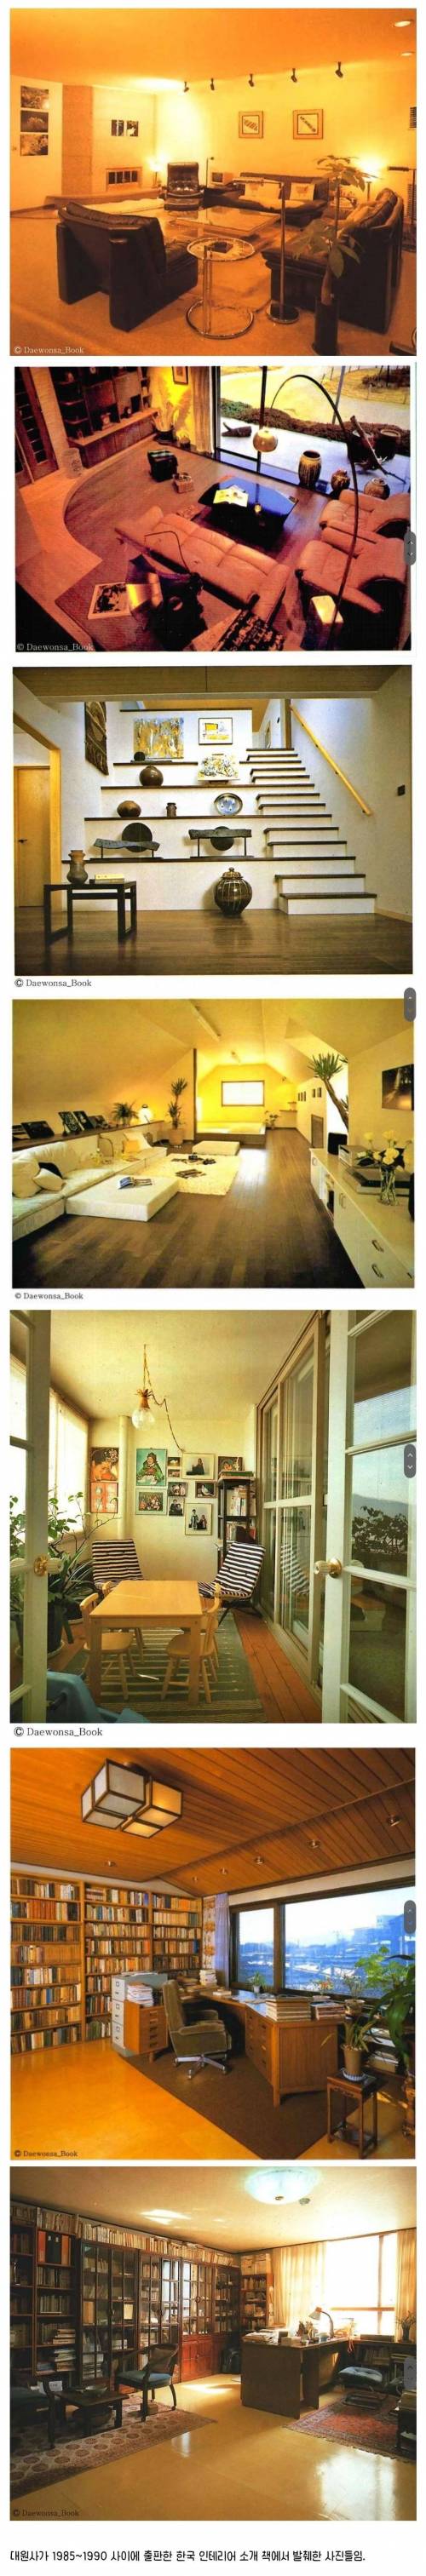 80년대 한국 상류층 집 인테리어.jpg